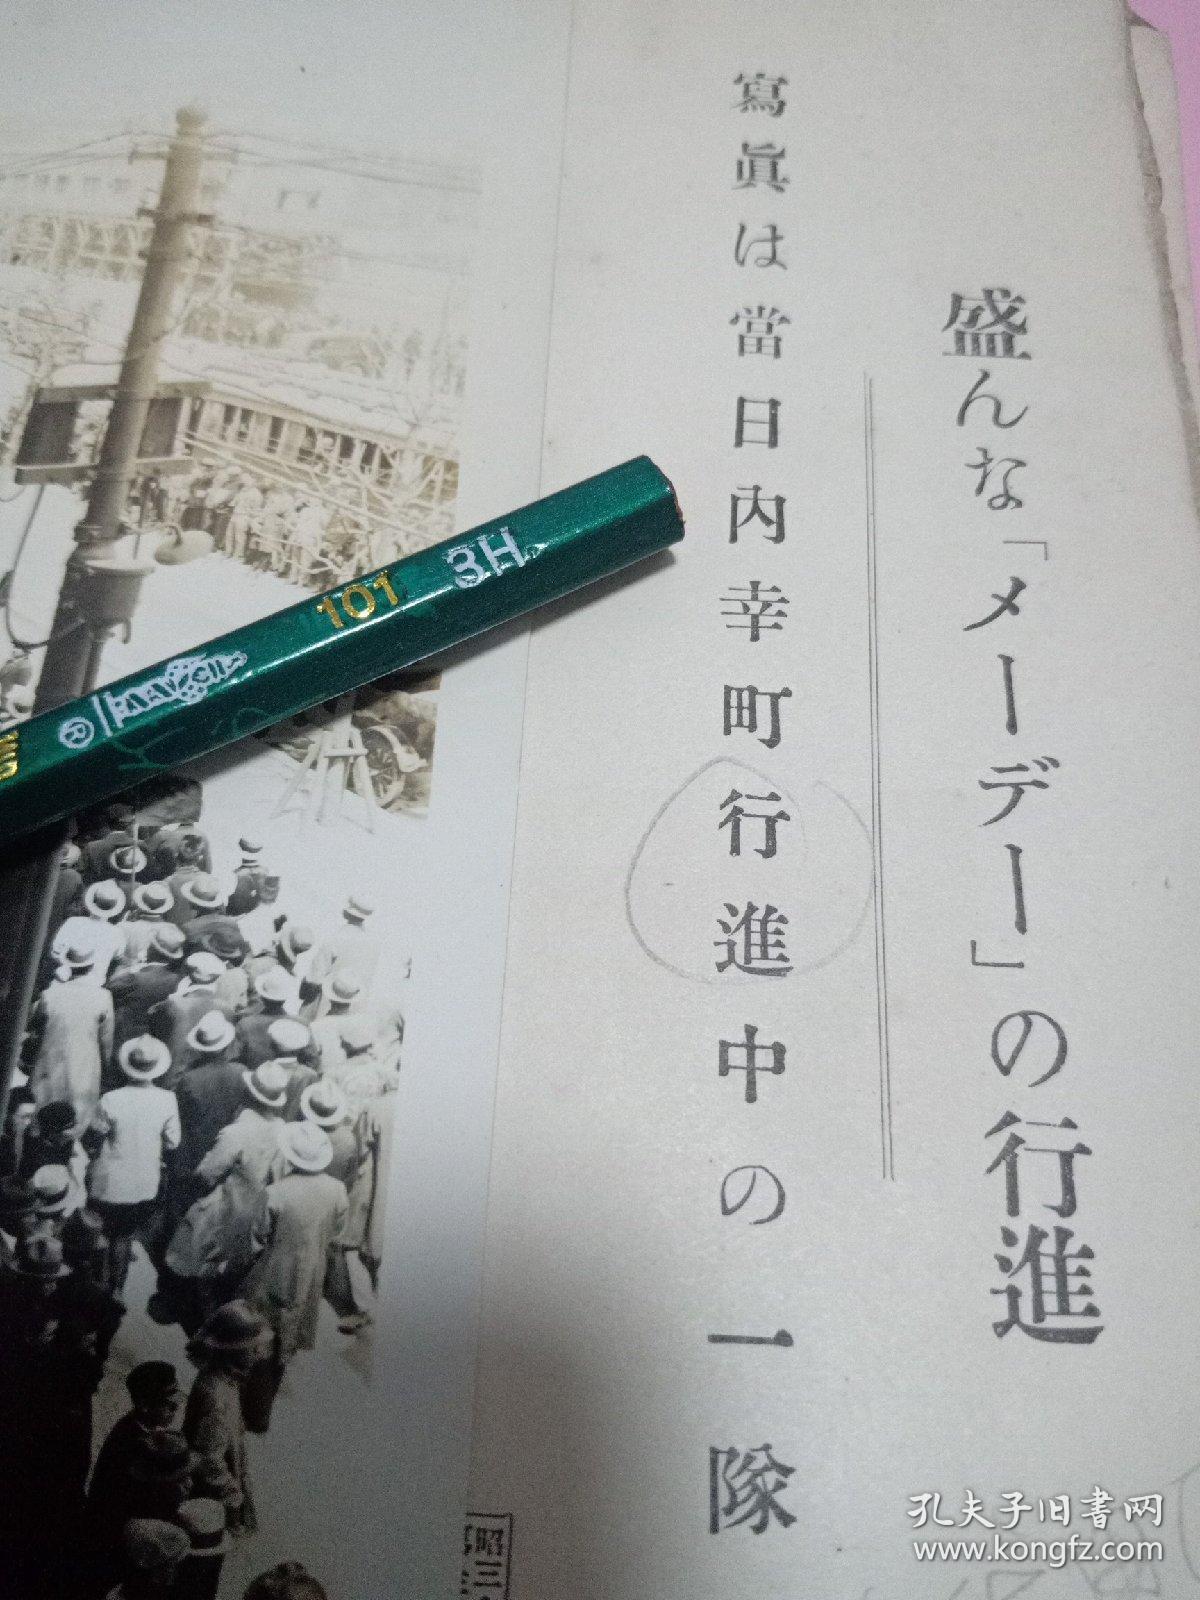 1928年5月1日。日本昭和三年。日本东京都千代田区内幸町举行盛大的五一国际劳动节大游行的场景。